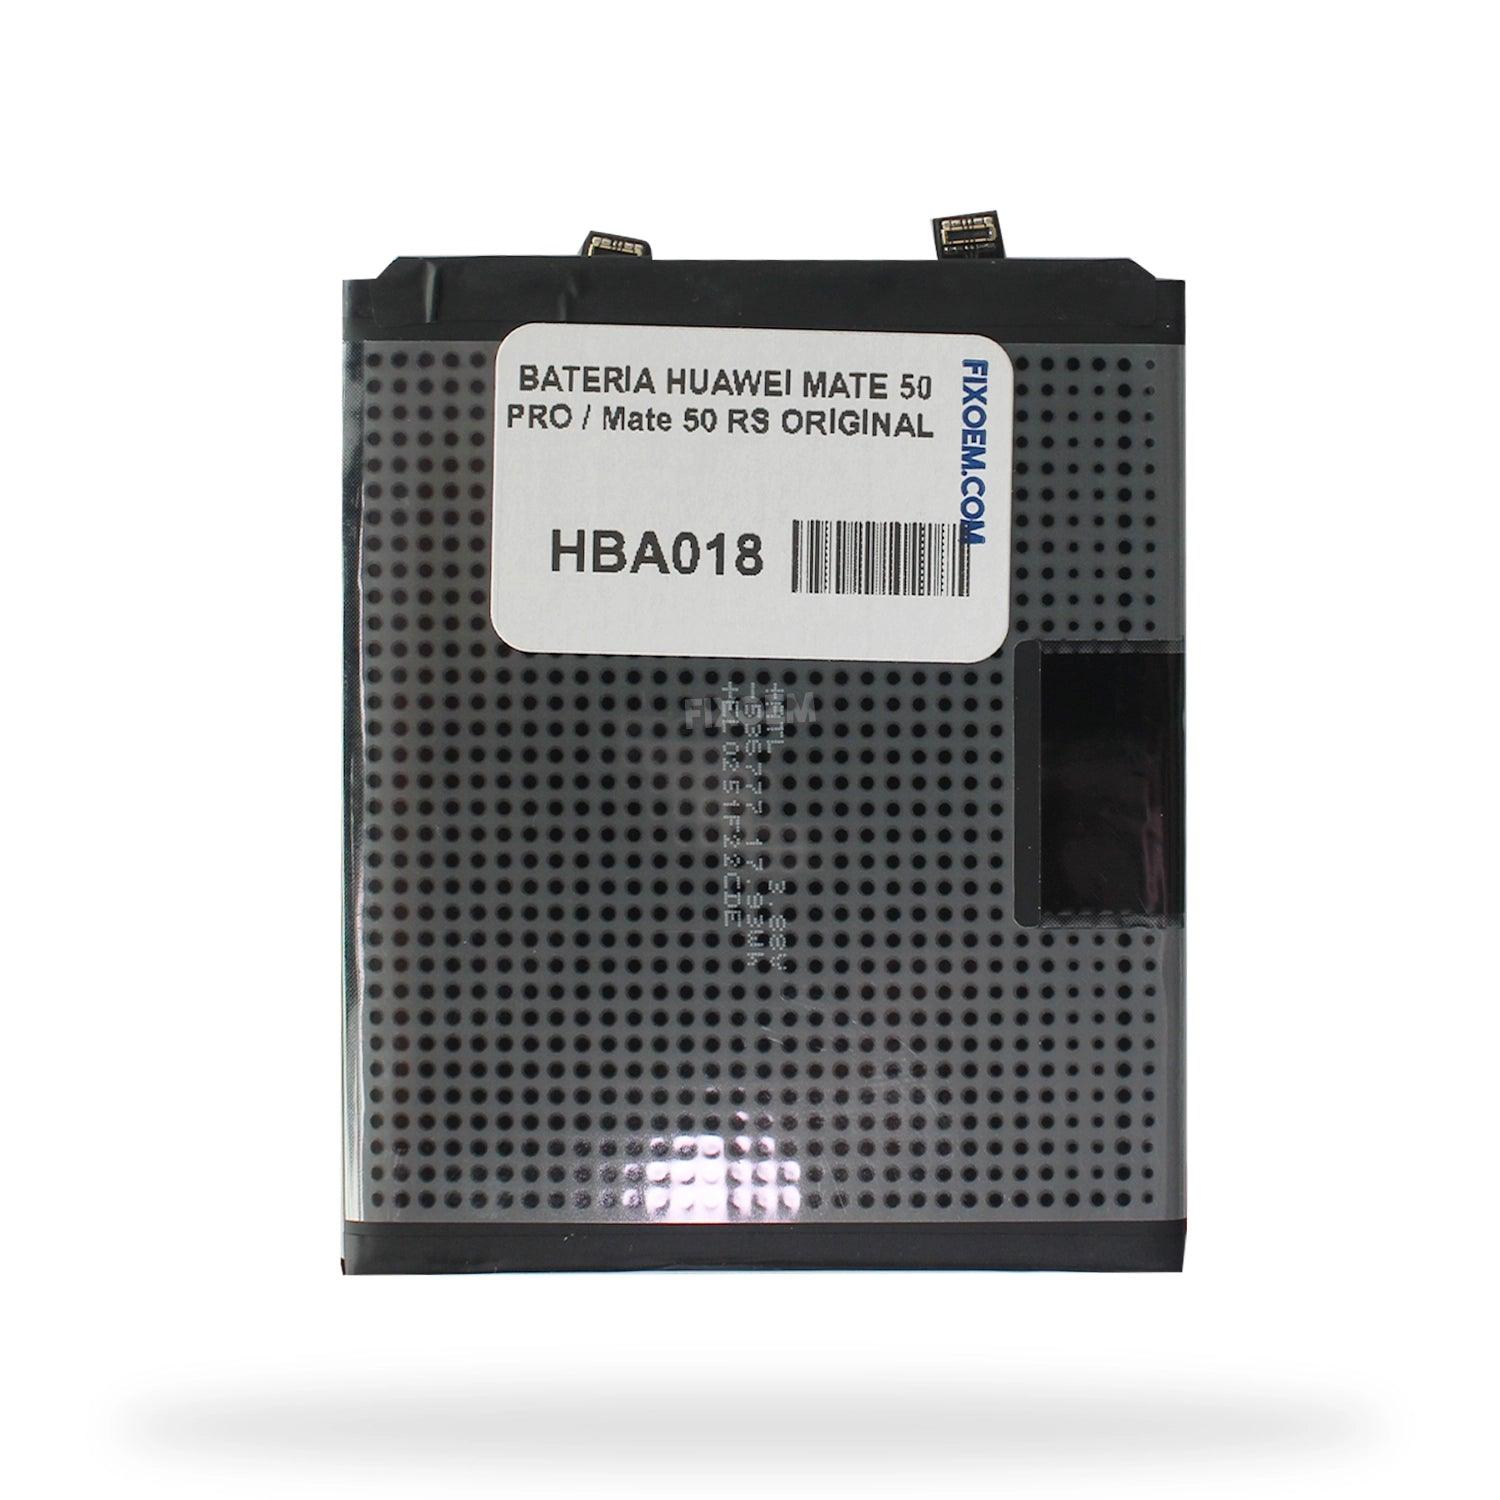 Bateria Huawei Original Mate 50 Pro / Mate 50 Rs HB546779EGW |+2,000 reseñas 4.8/5 ⭐